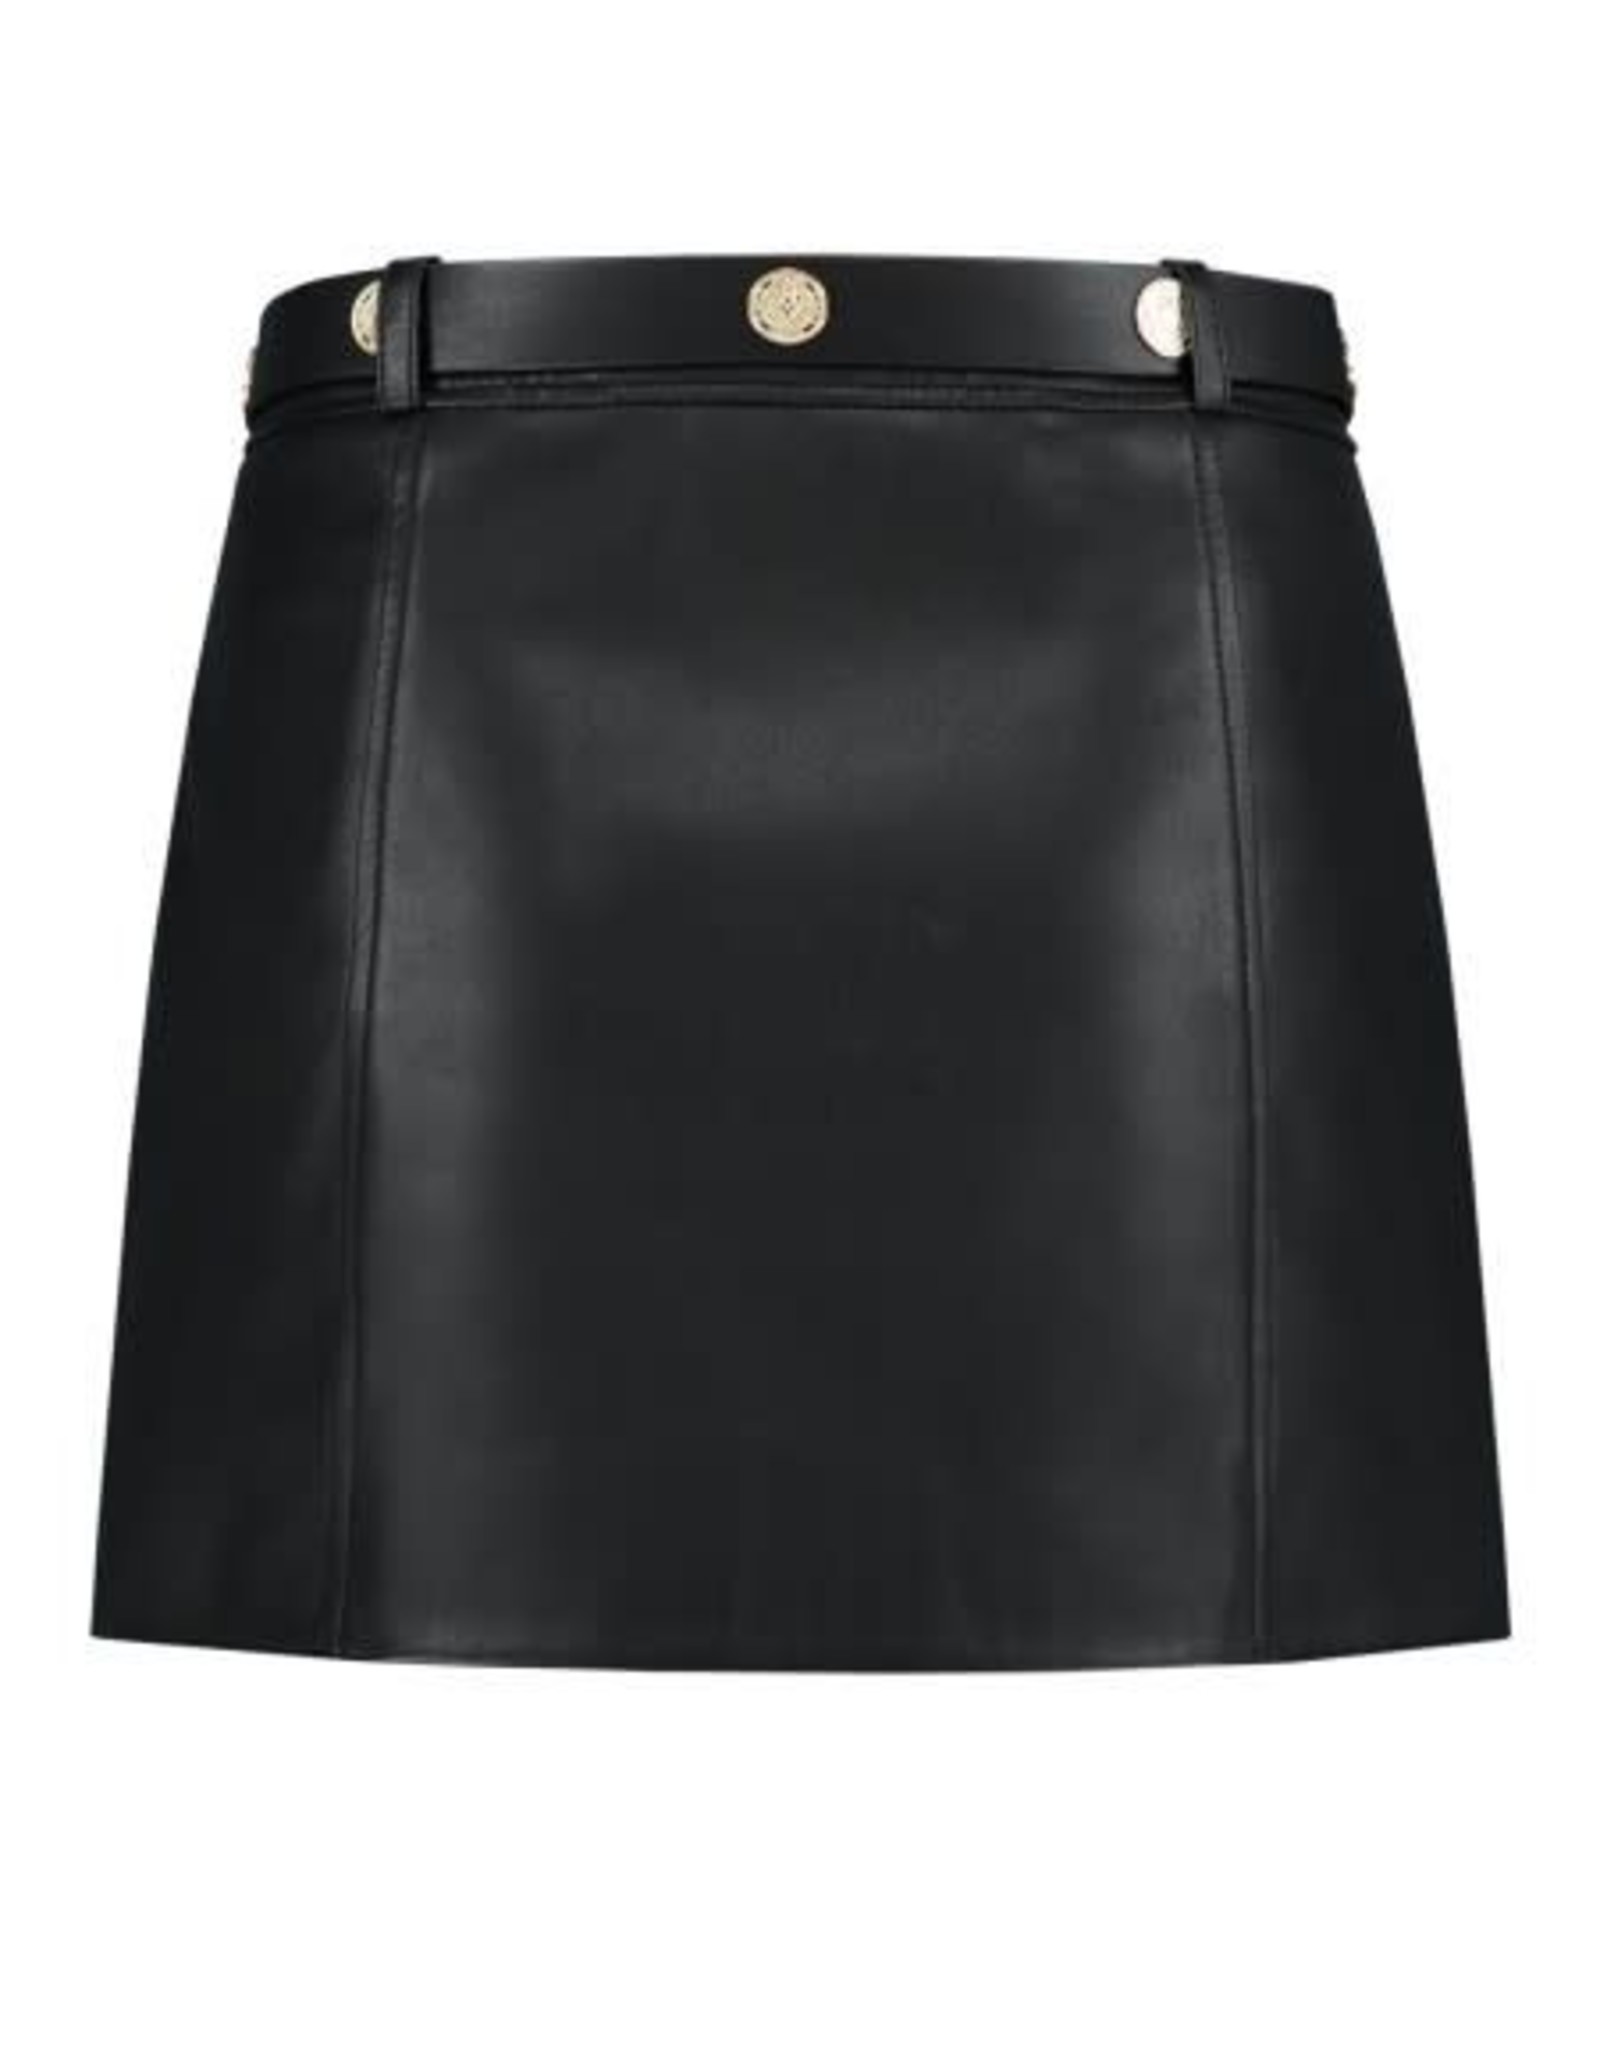 Kate Moss Mali Motor Skirt Black